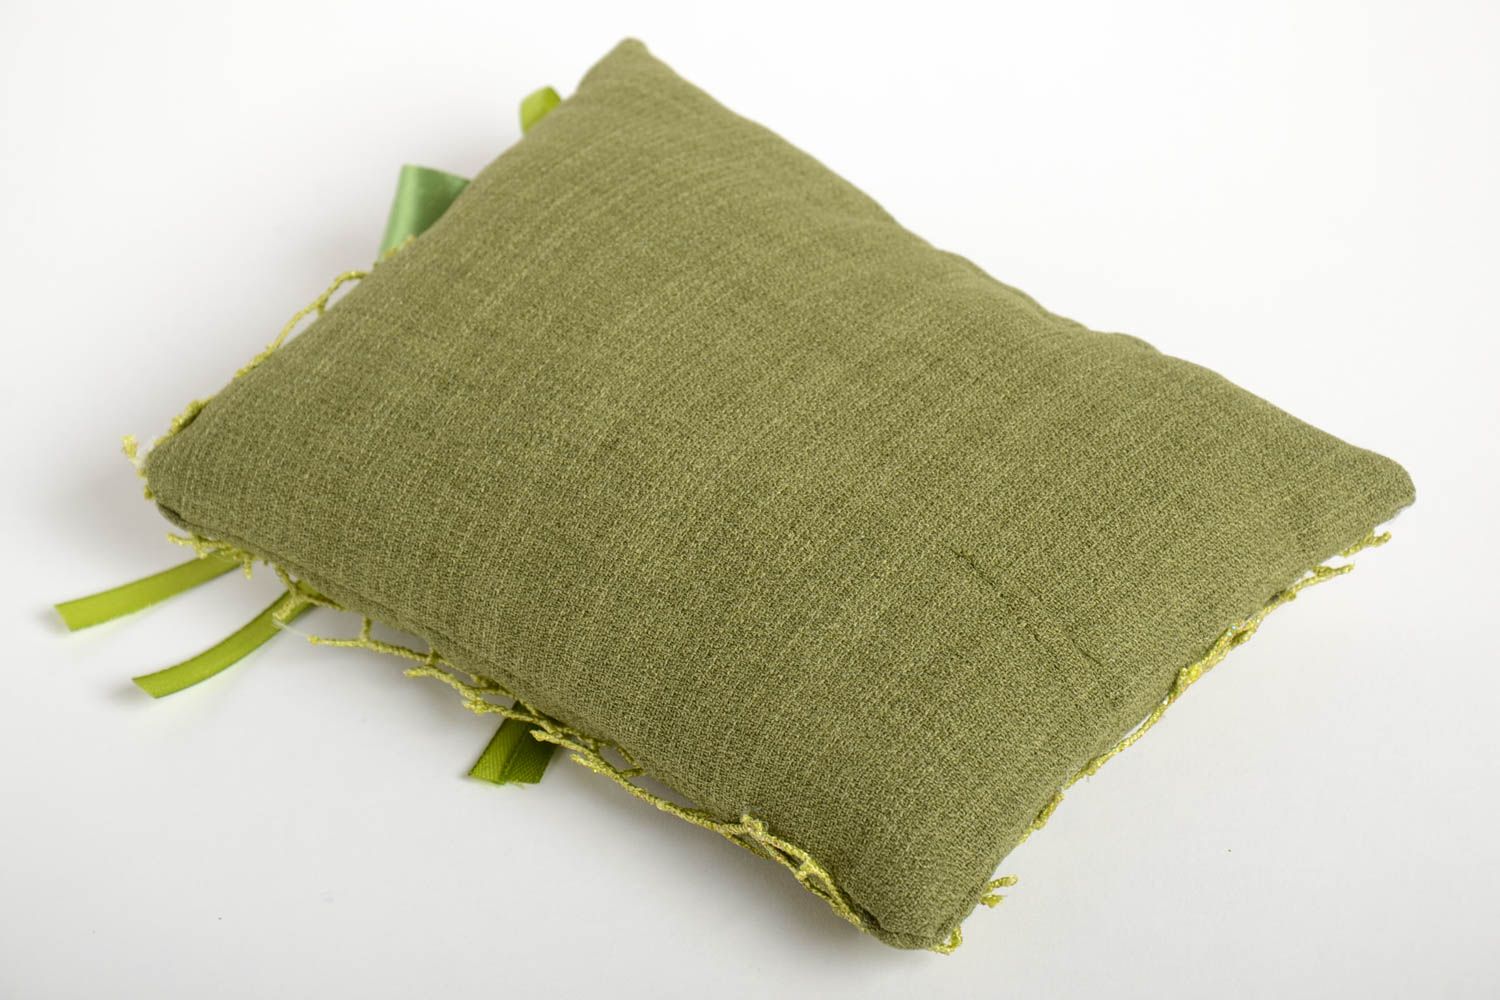 Cute cushion designer sofa cushion home decor ideas soft pillow for home photo 4